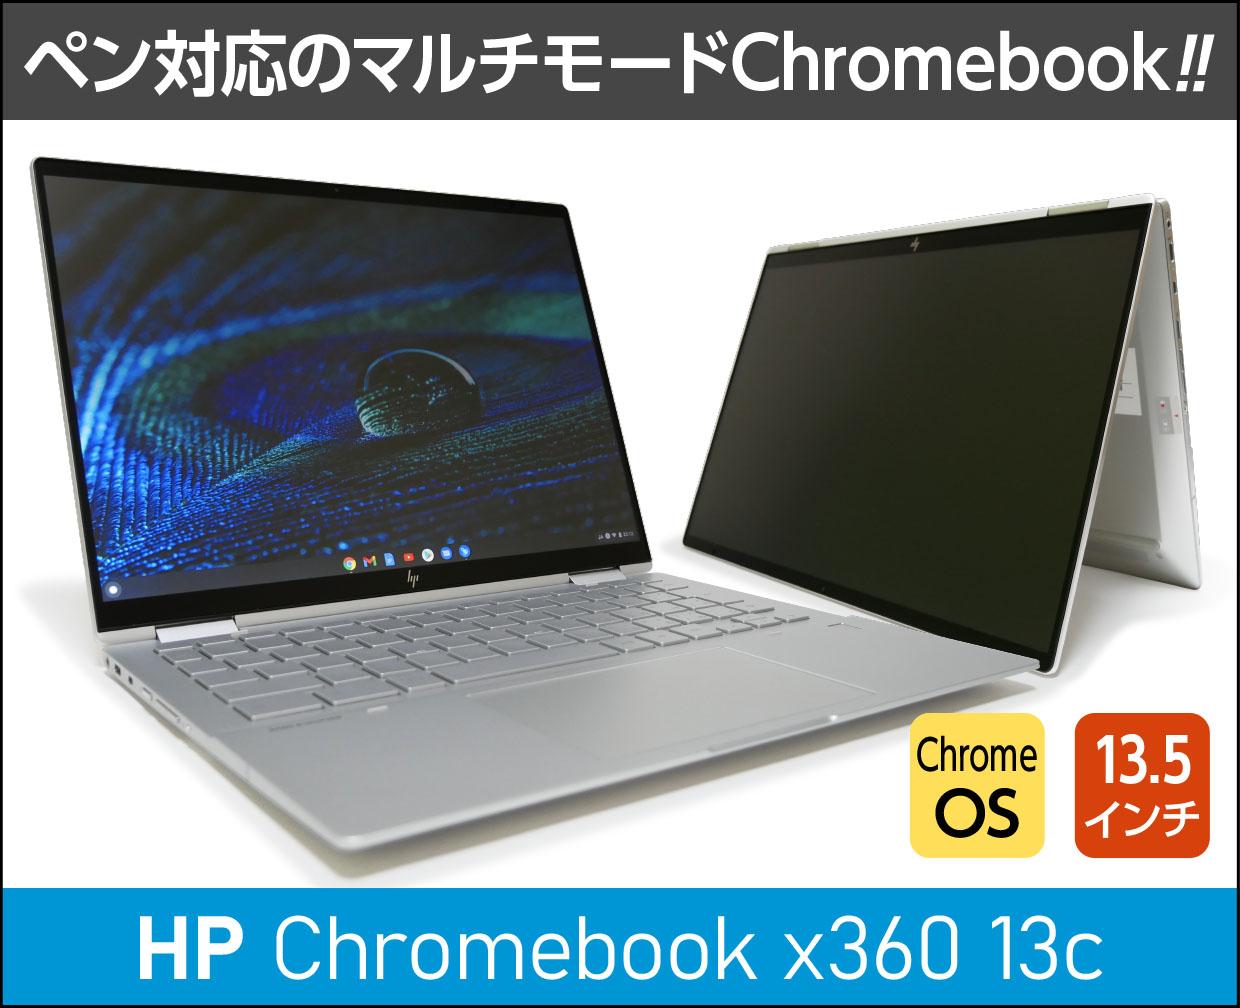 Main image of HP Chromebook x360 13c